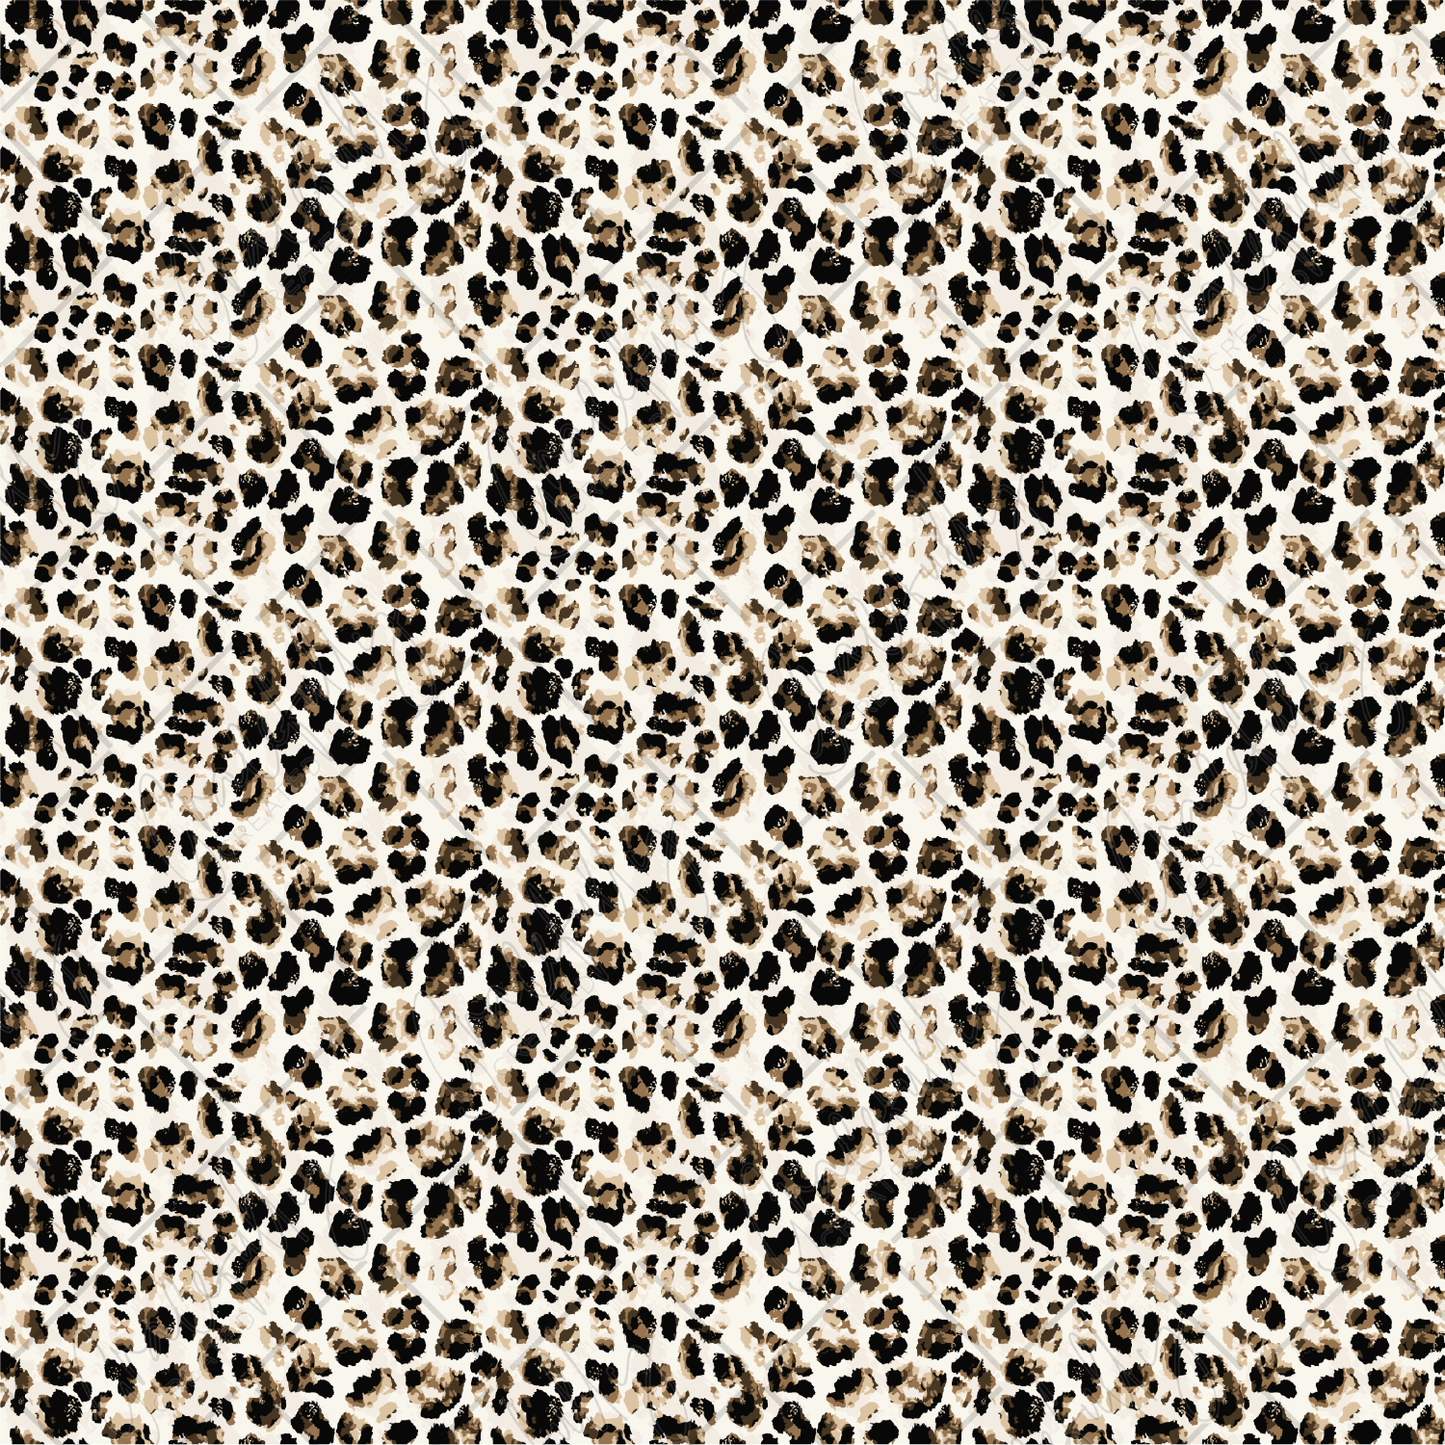 PV74 Fuzzy Leopard